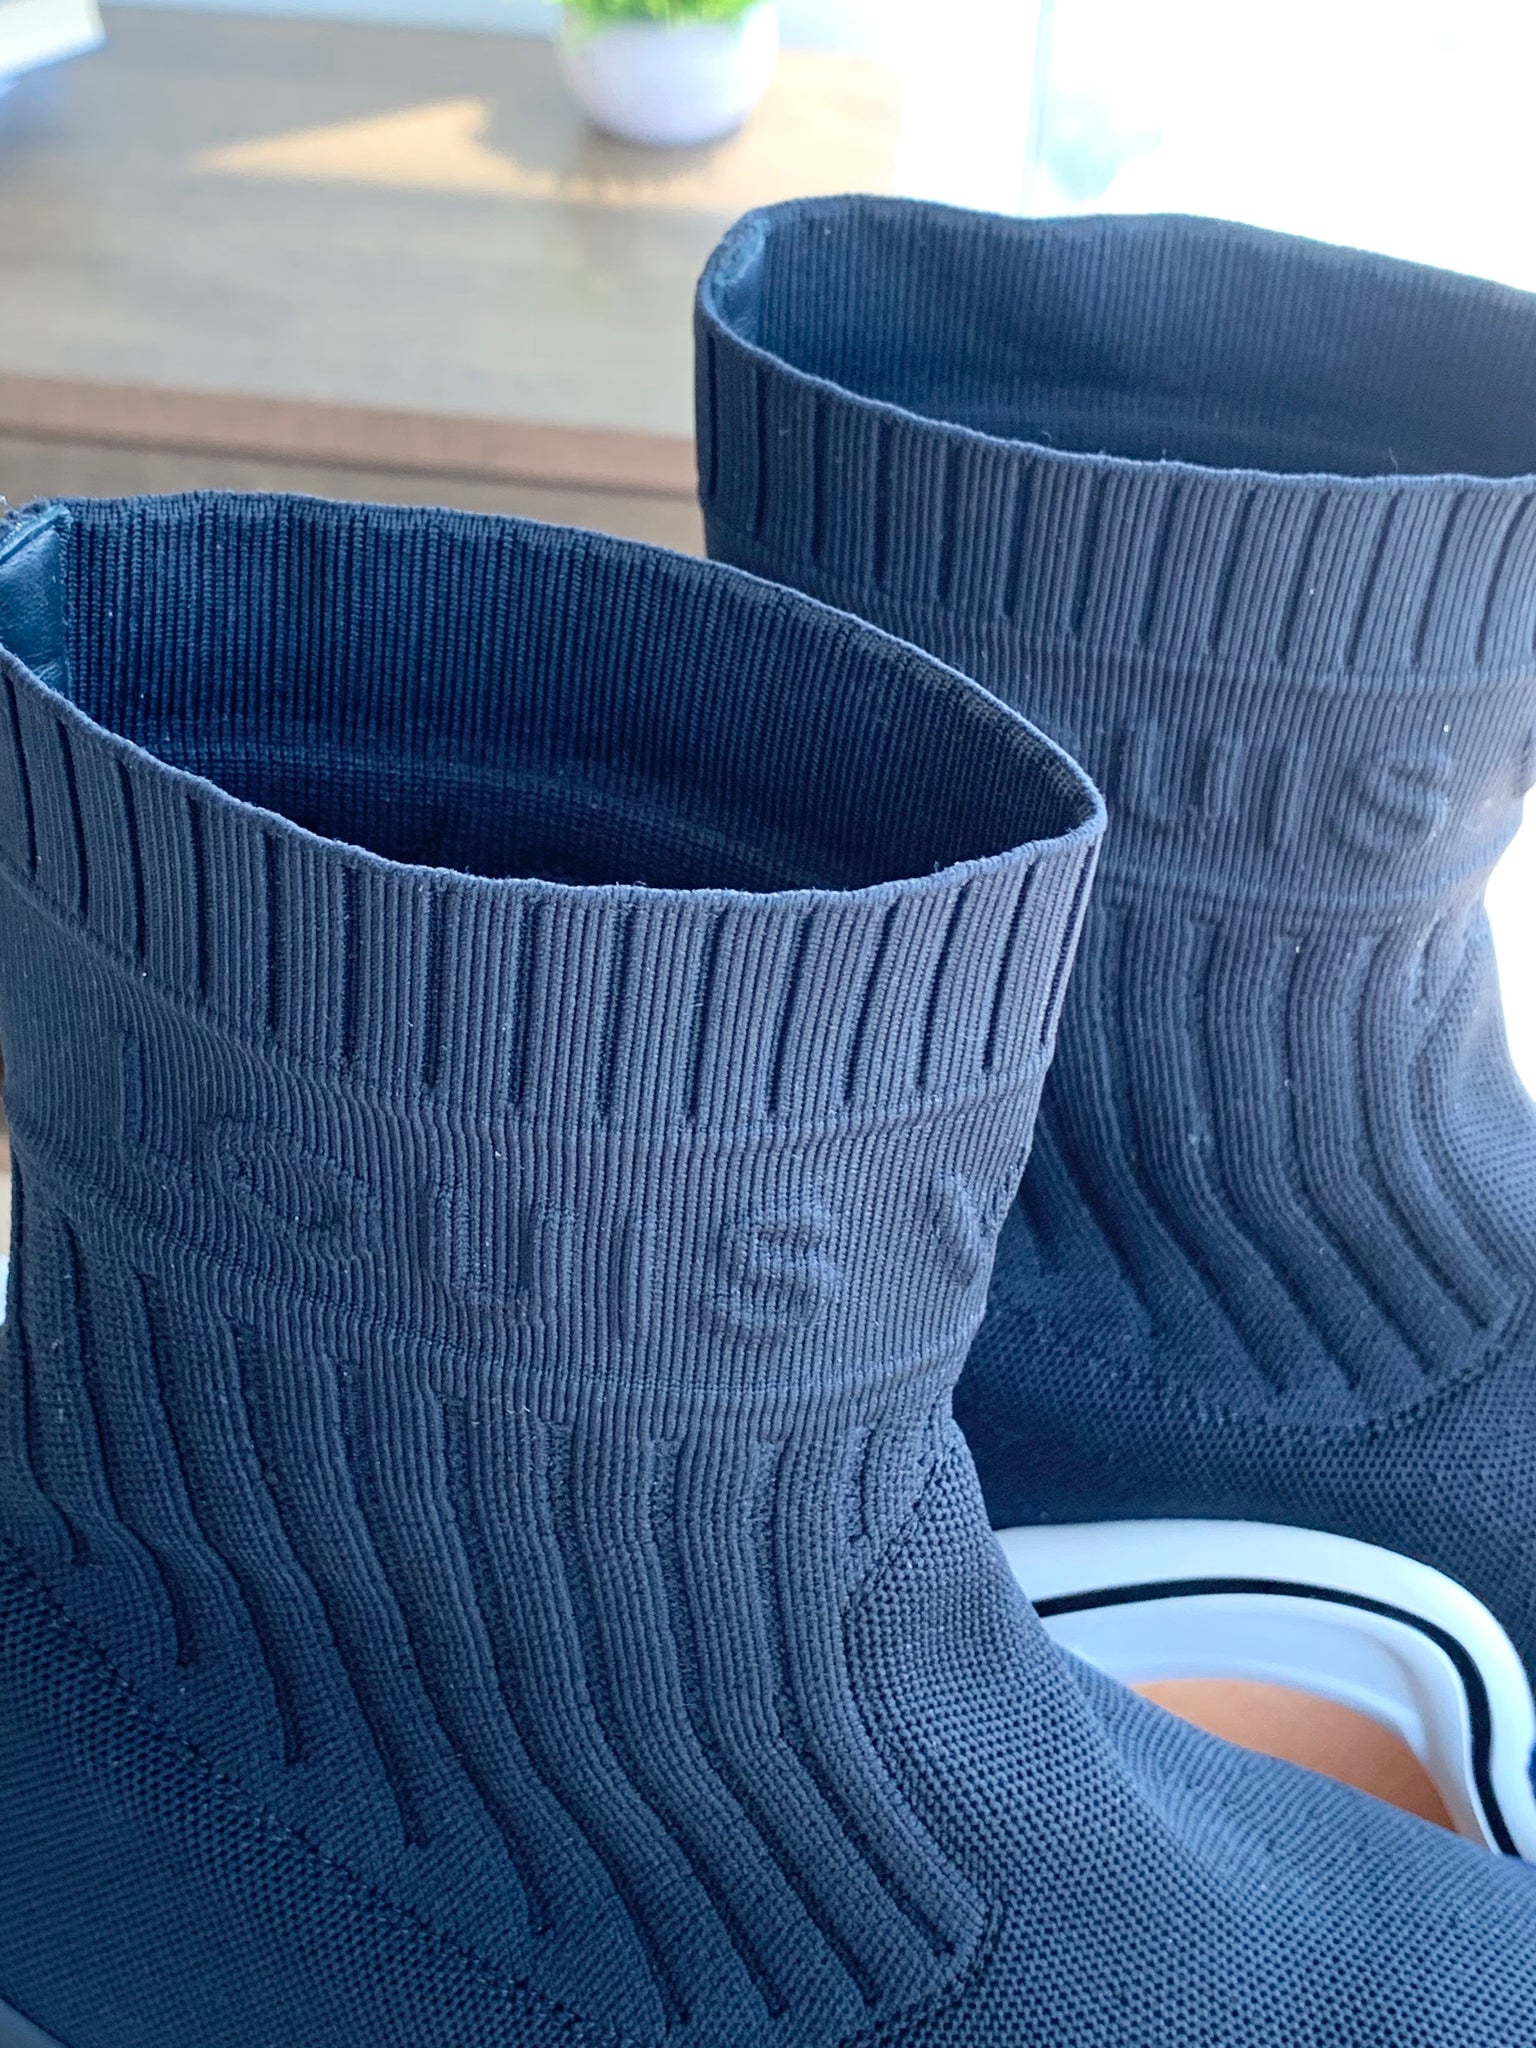 LOUIS VUITTON Stretch Textile LV Archlight Sneaker Boots 36 Black